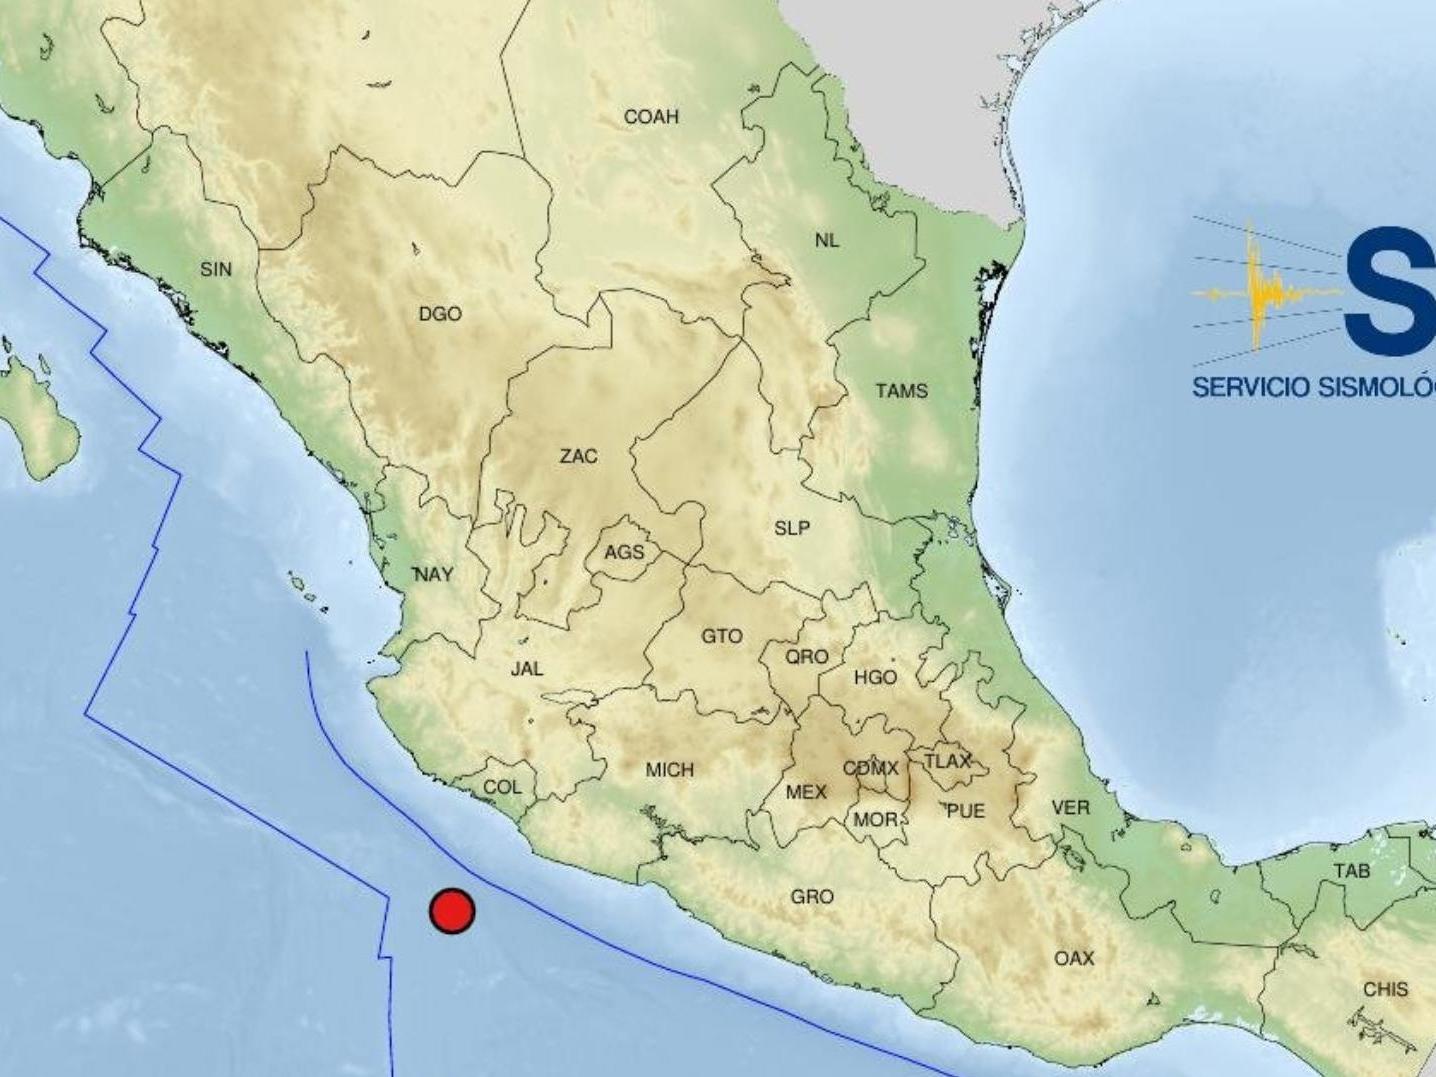 Sismo de Magnitud 5.2 se Registra en Ciudad de Armería, Colima